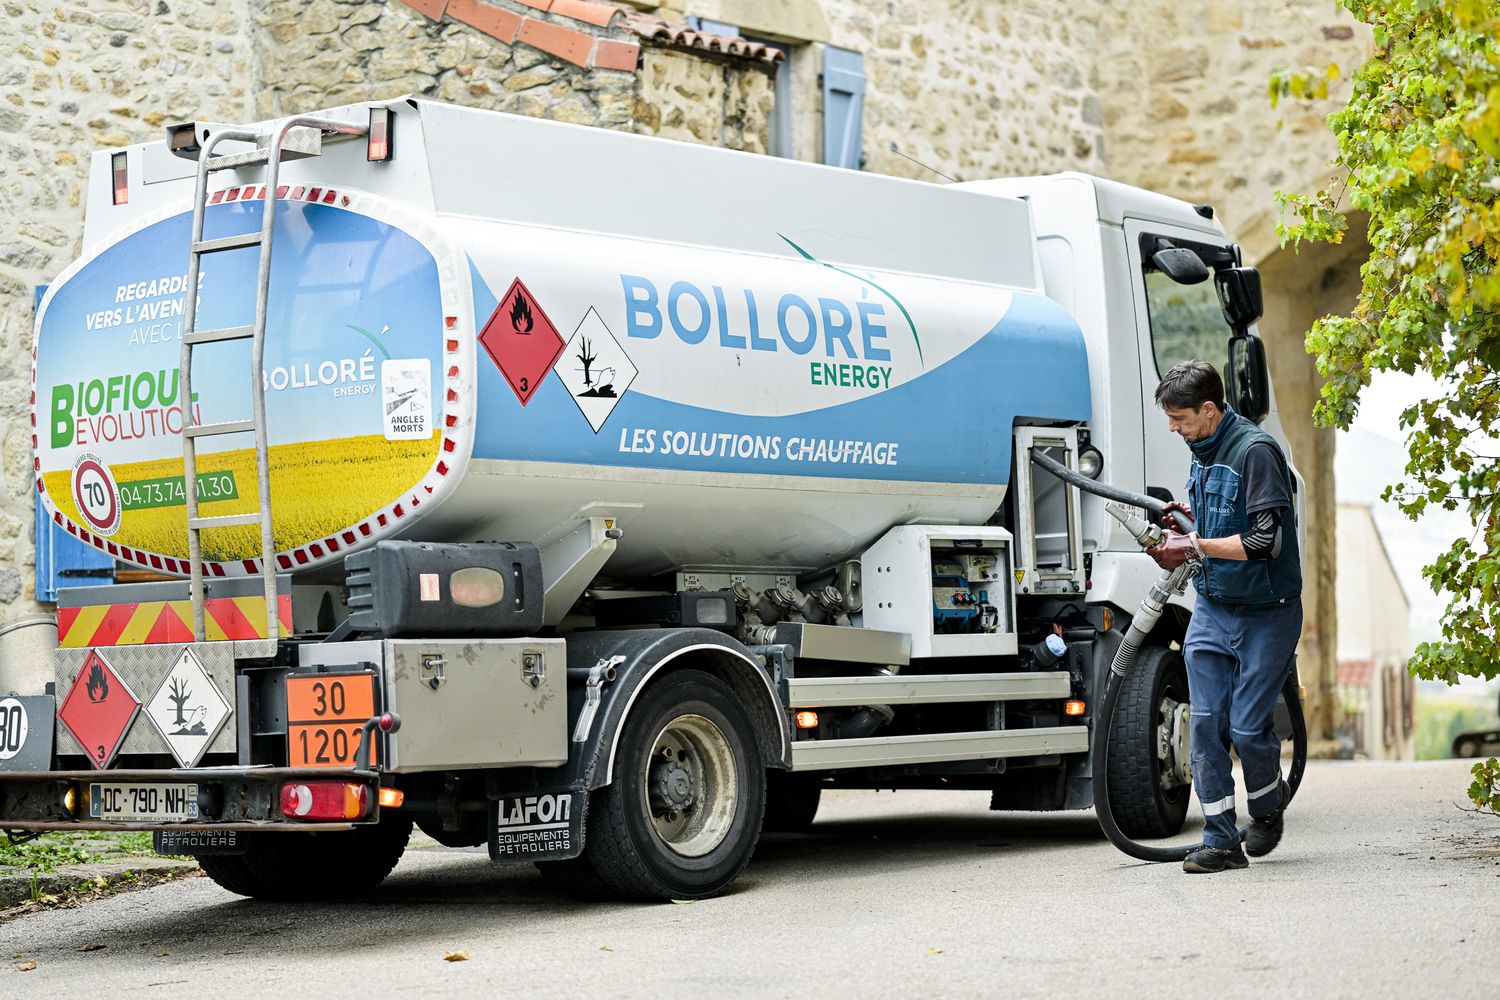 Les acteurs l'affirment : la distribution des biocarburants en France est opérationnelle, en faisant une alternative crédible en attendant la maturité de l'électrique. ©Bolloré Energy